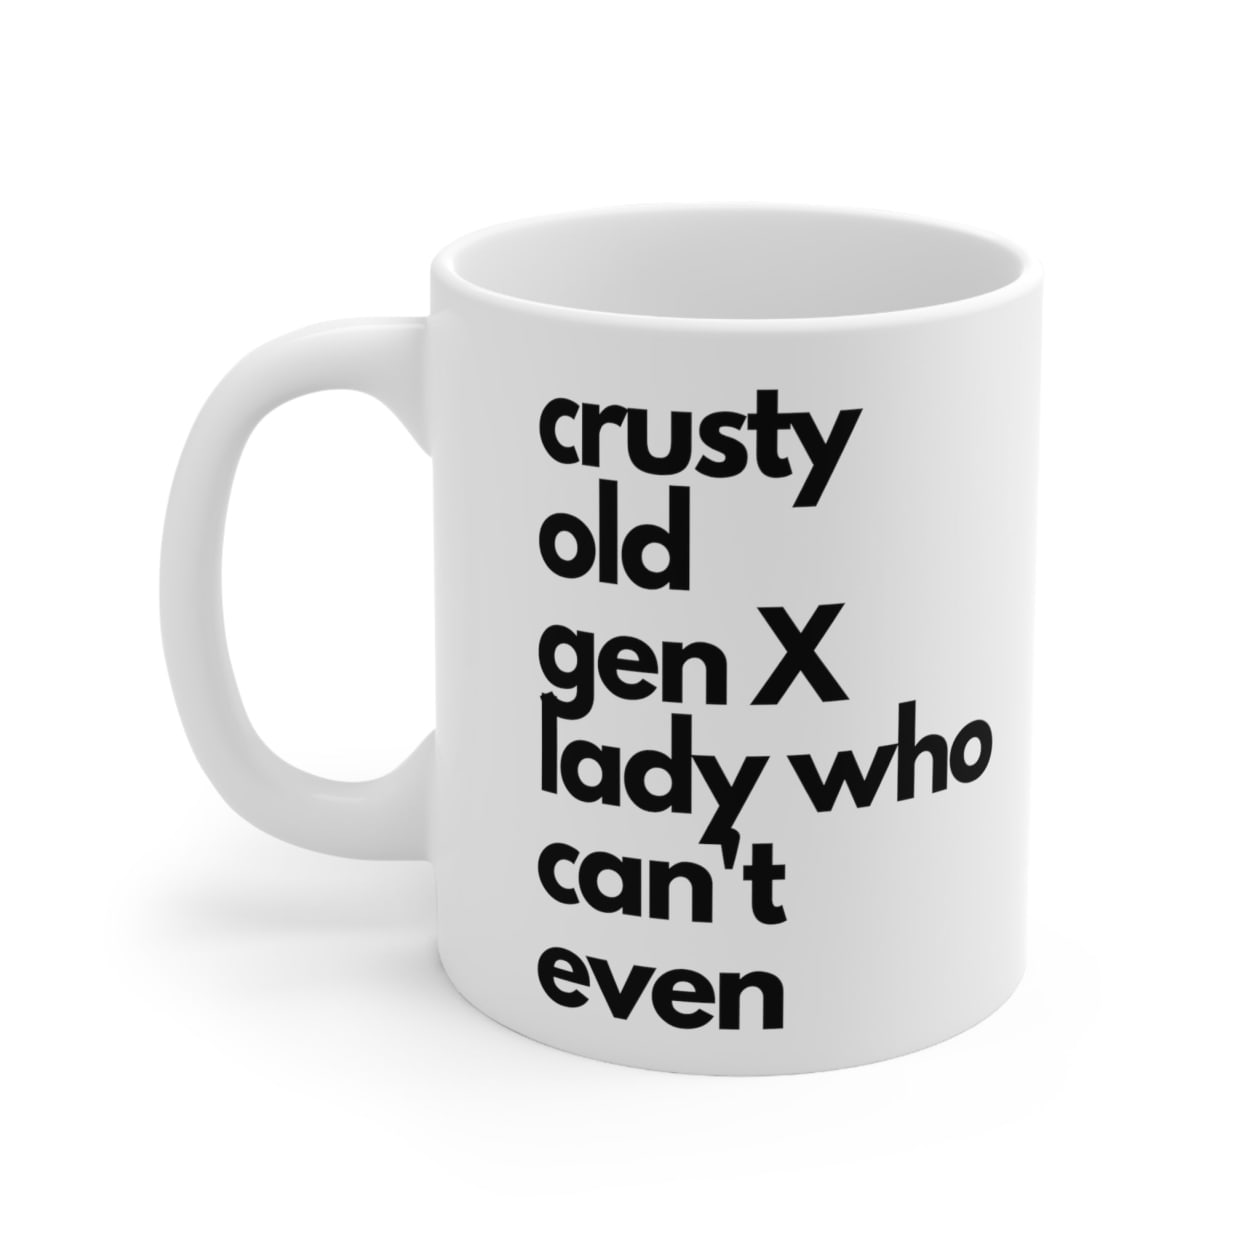 Crusty Old Gen X Lady Who Can't Even Ceramic Mug 11oz - Size: 11oz